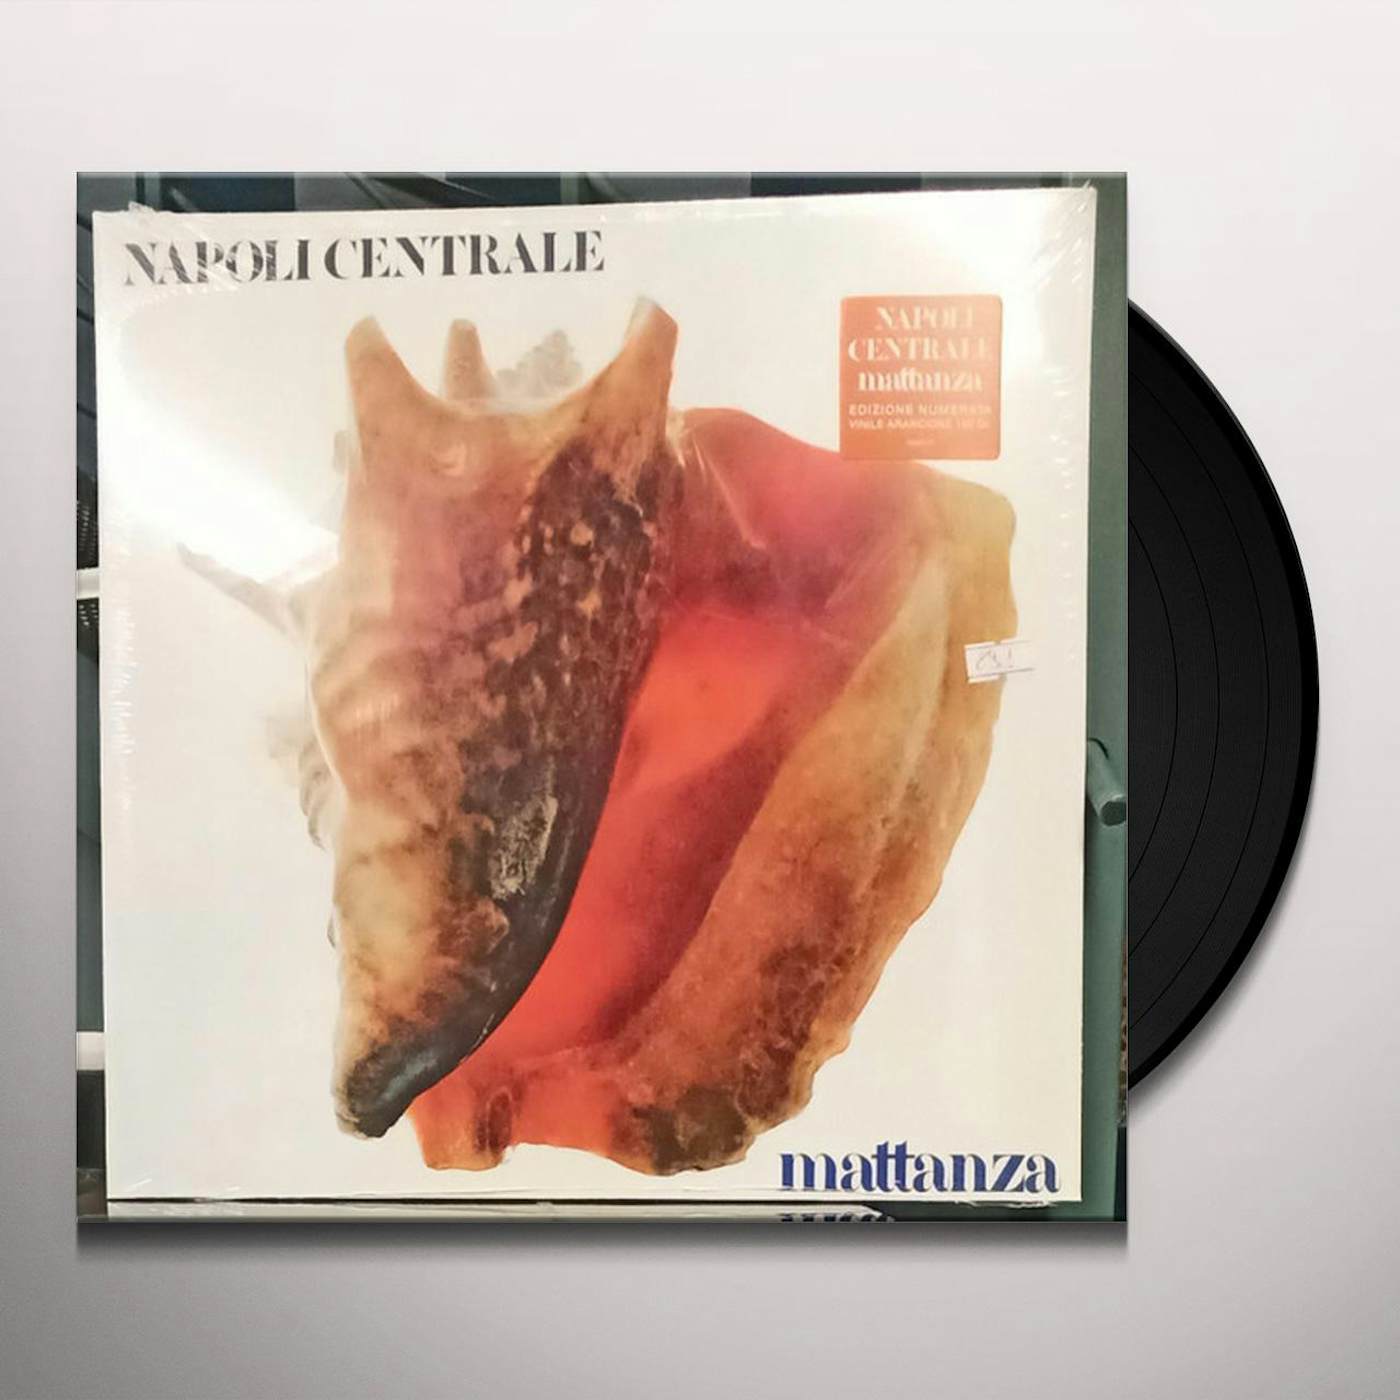 Napoli Centrale Mattanza Vinyl Record